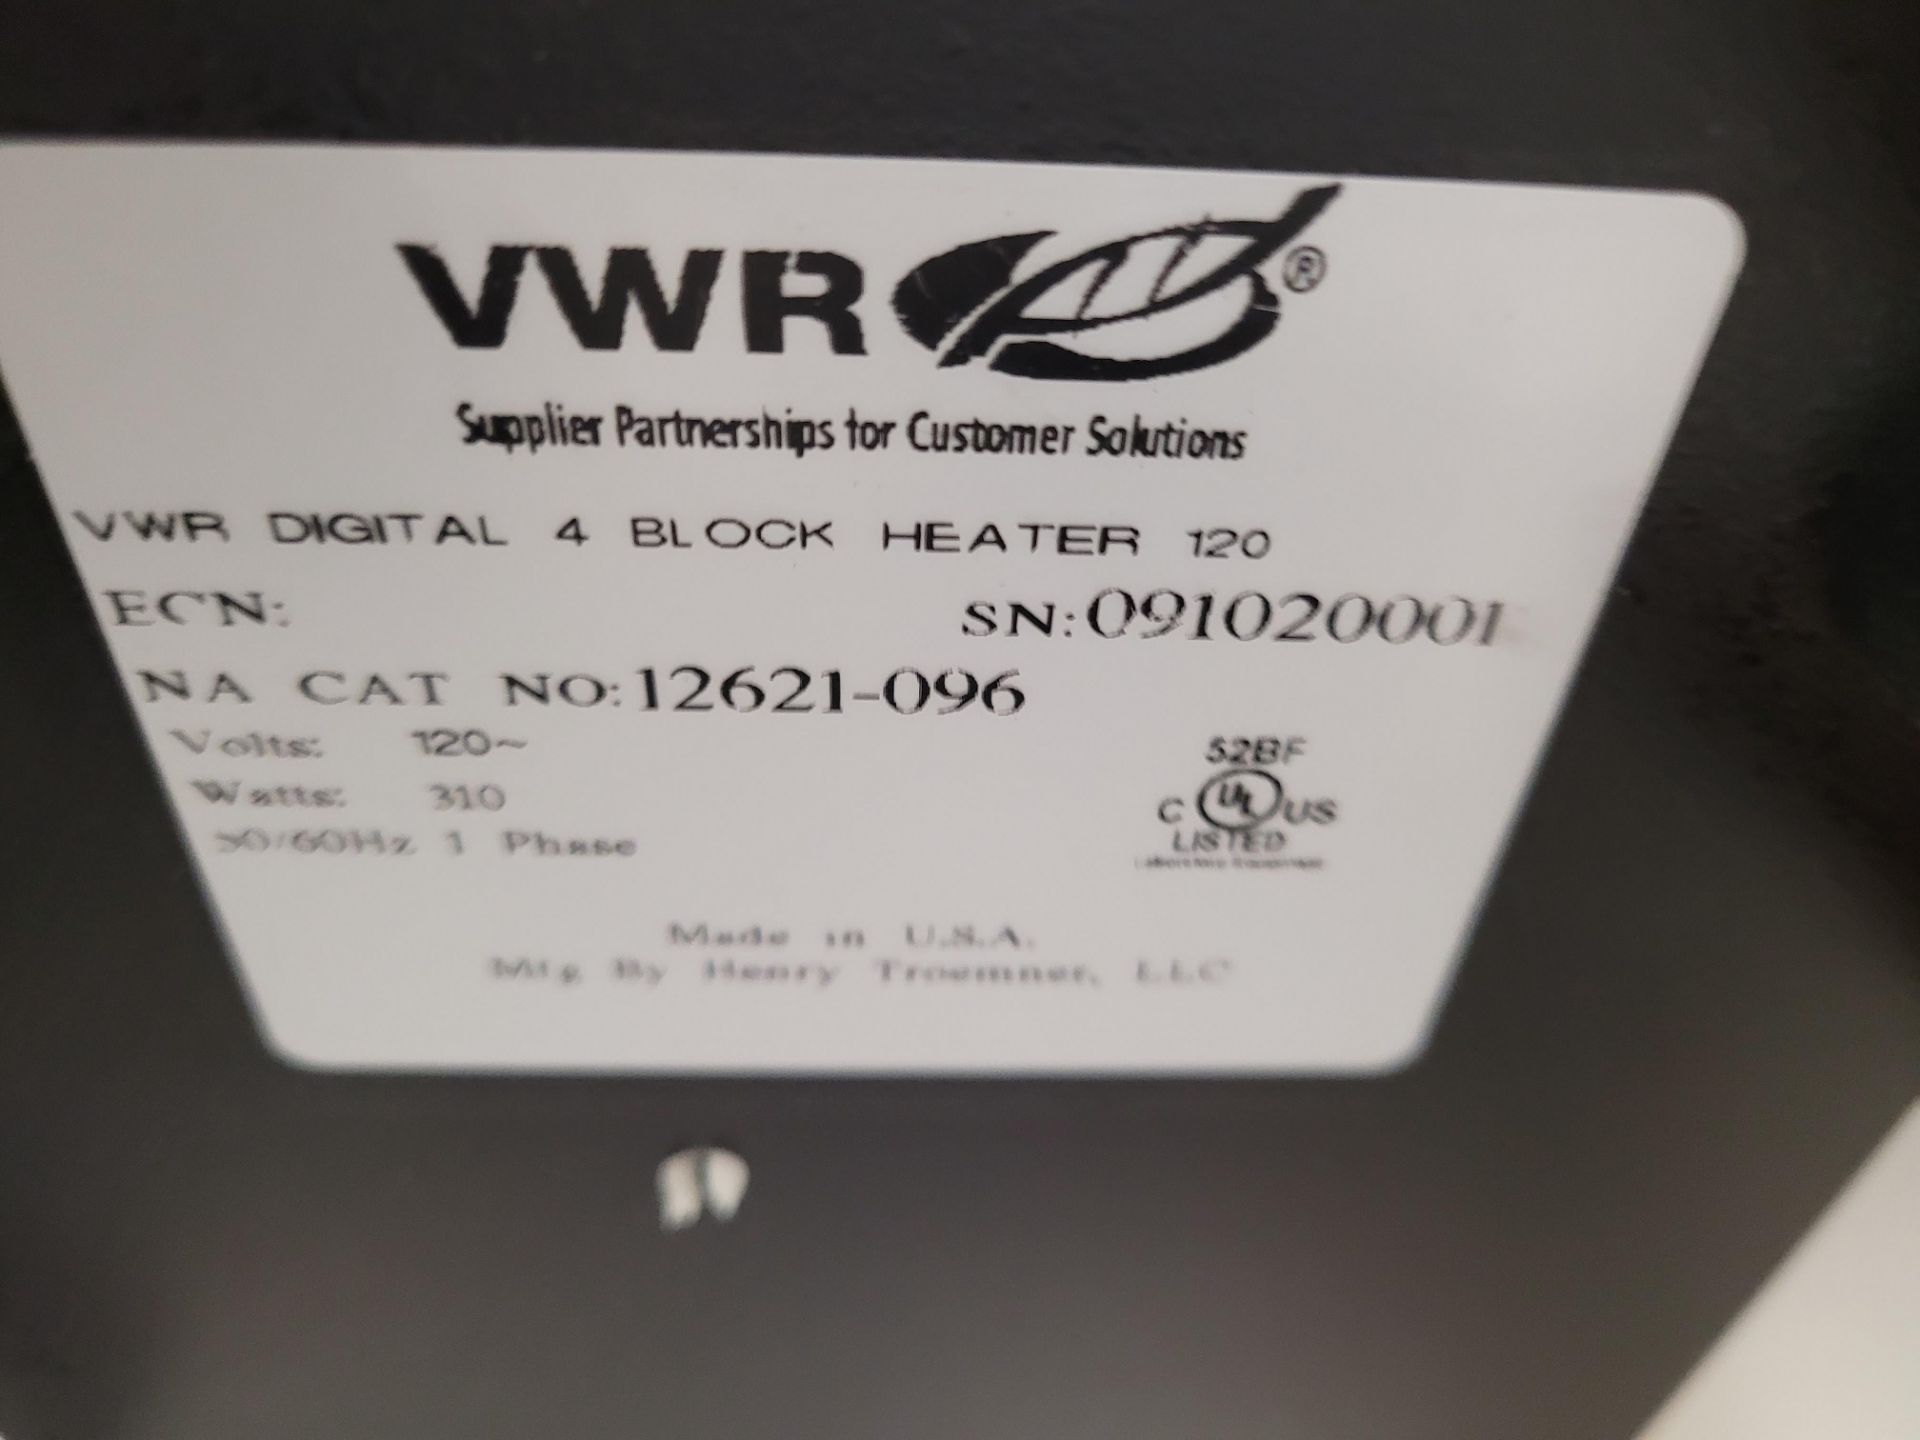 VWR Digital Multi-Heat Block mod. Digital 4 Block Heater, 120V, Cat. No. 12621-096, ser. 091020001 - Image 4 of 4